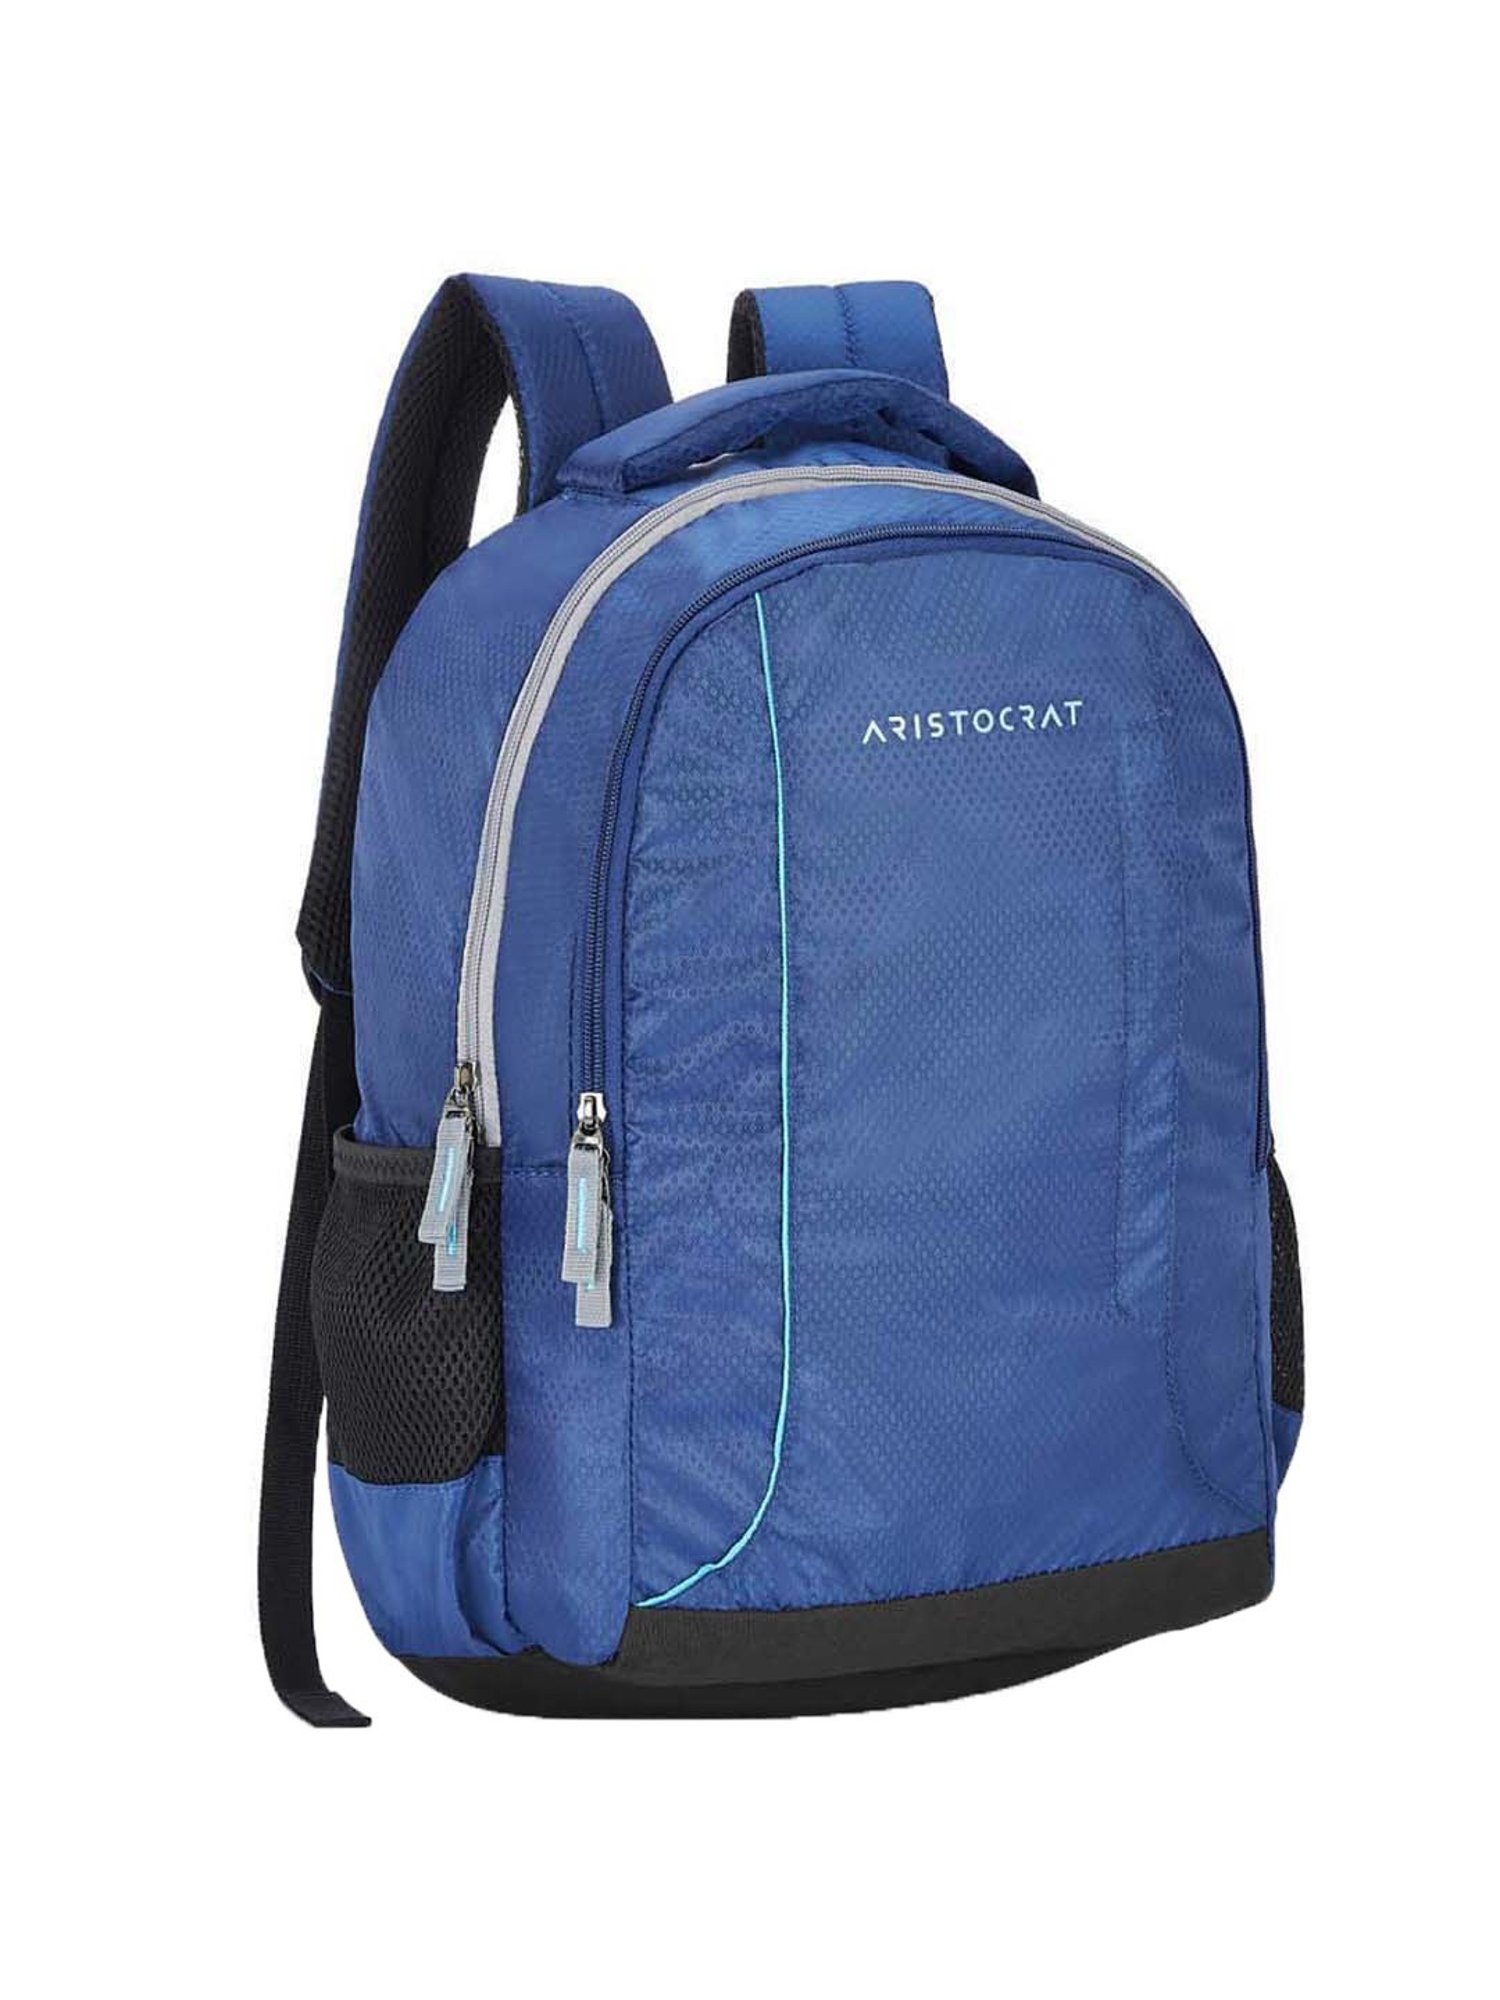 ARISTOCRAT ZYLO 2 36 L Backpack GREY - Price in India | Flipkart.com